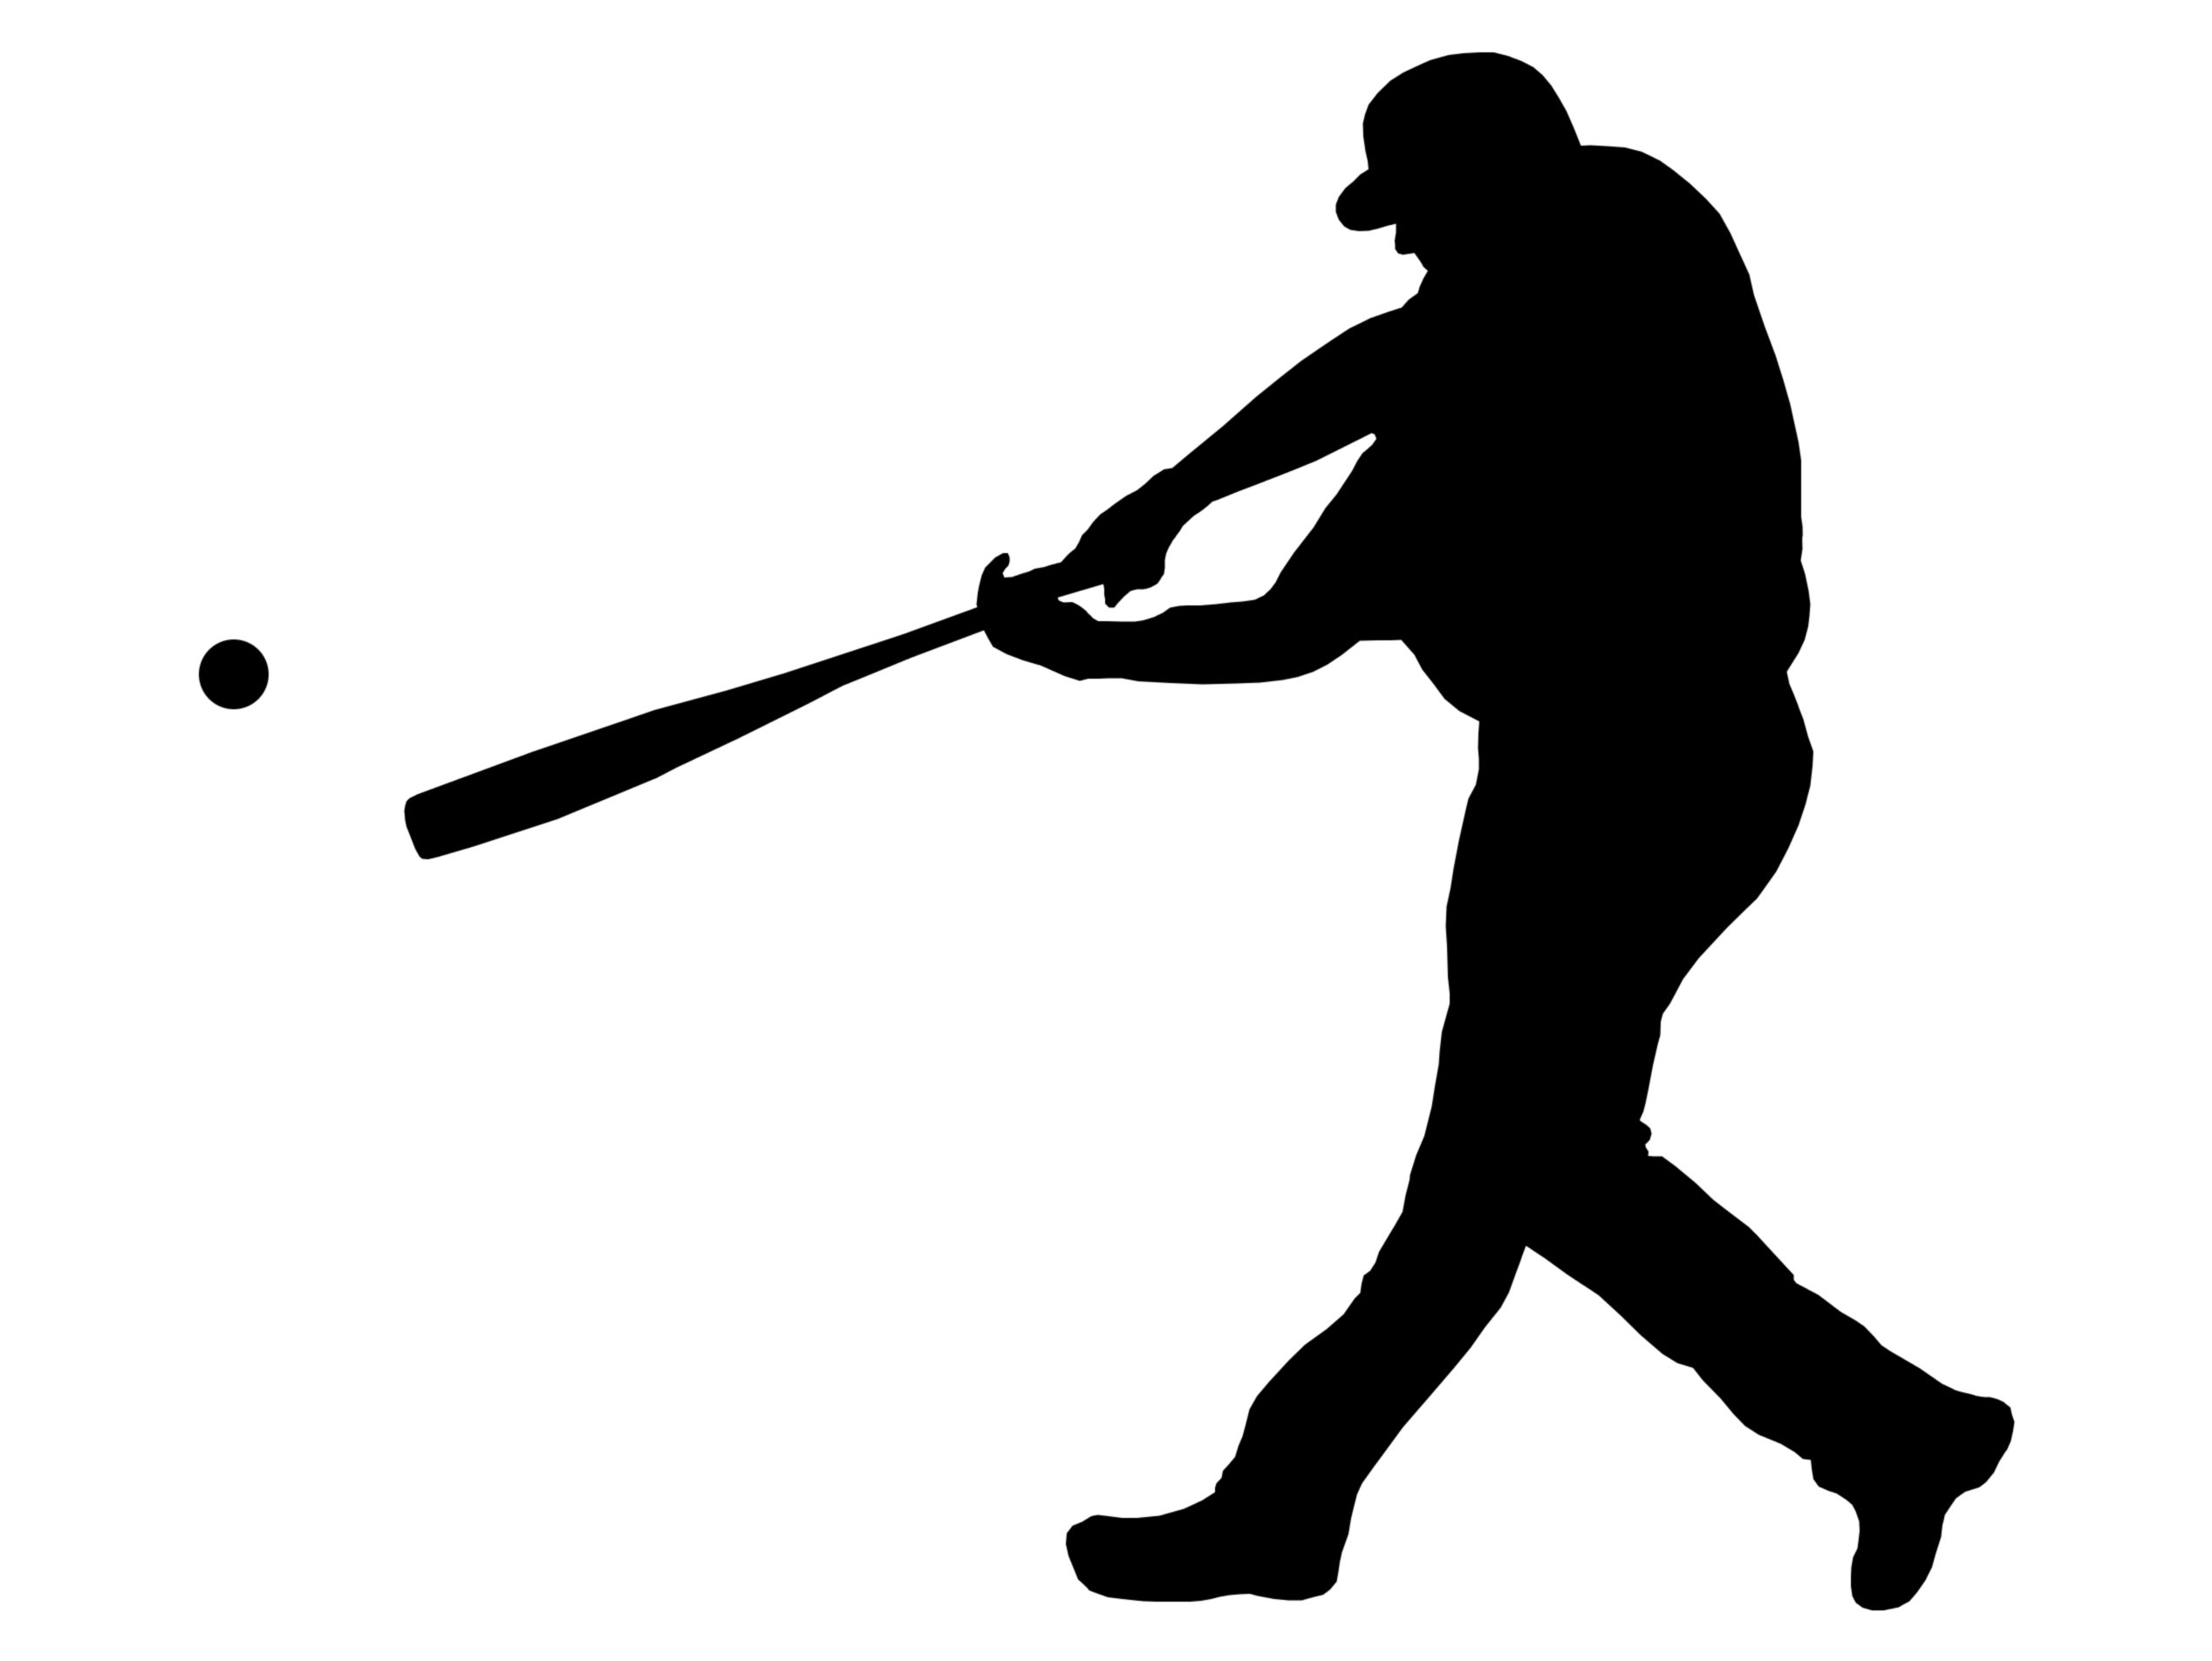 Baseball batter hitting ball clipart